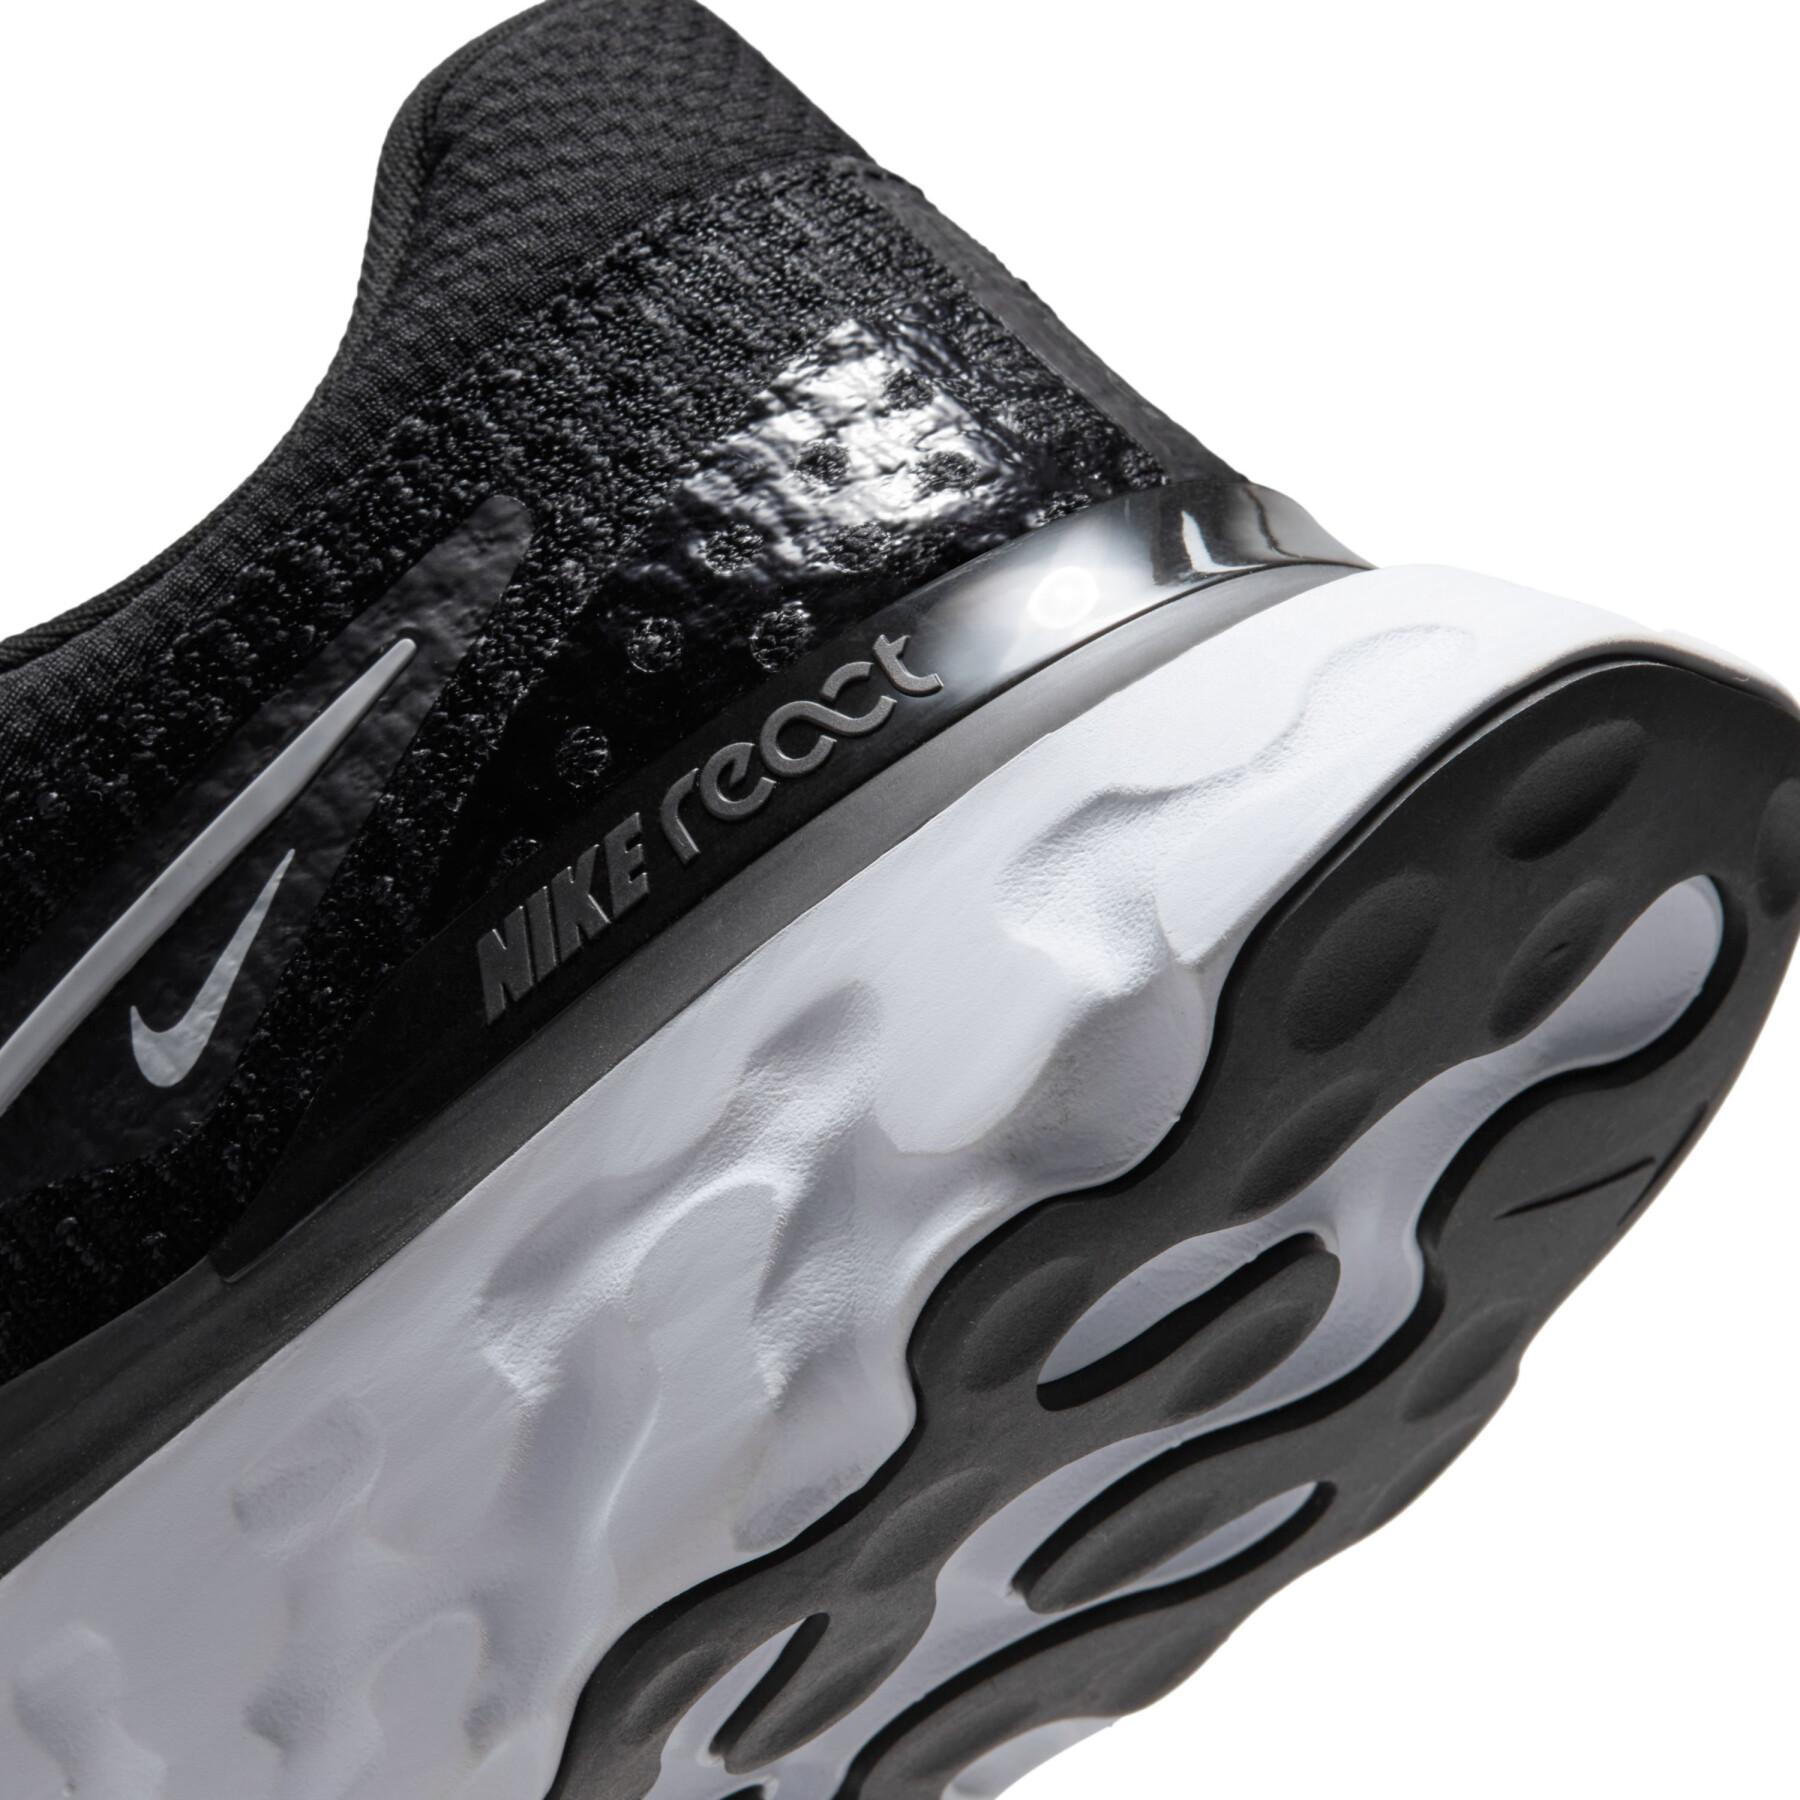 Running shoes Nike React Infinity Run Flyknit 3